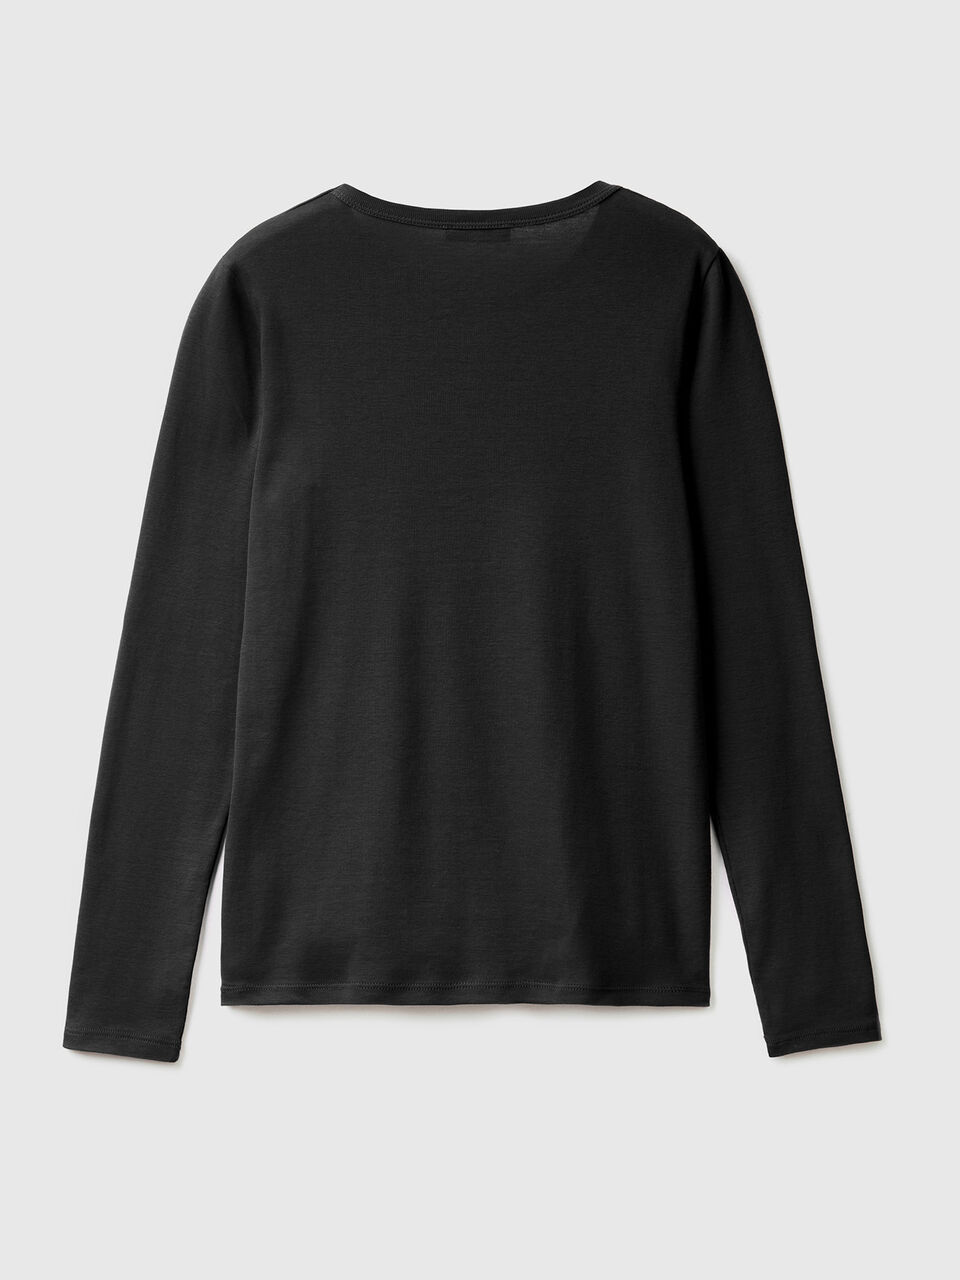 Camiseta Negra de Manga Larga para Bebés - Prenda de algodón 100%, cómoda,  Suave, cálida y Tacto Agradable